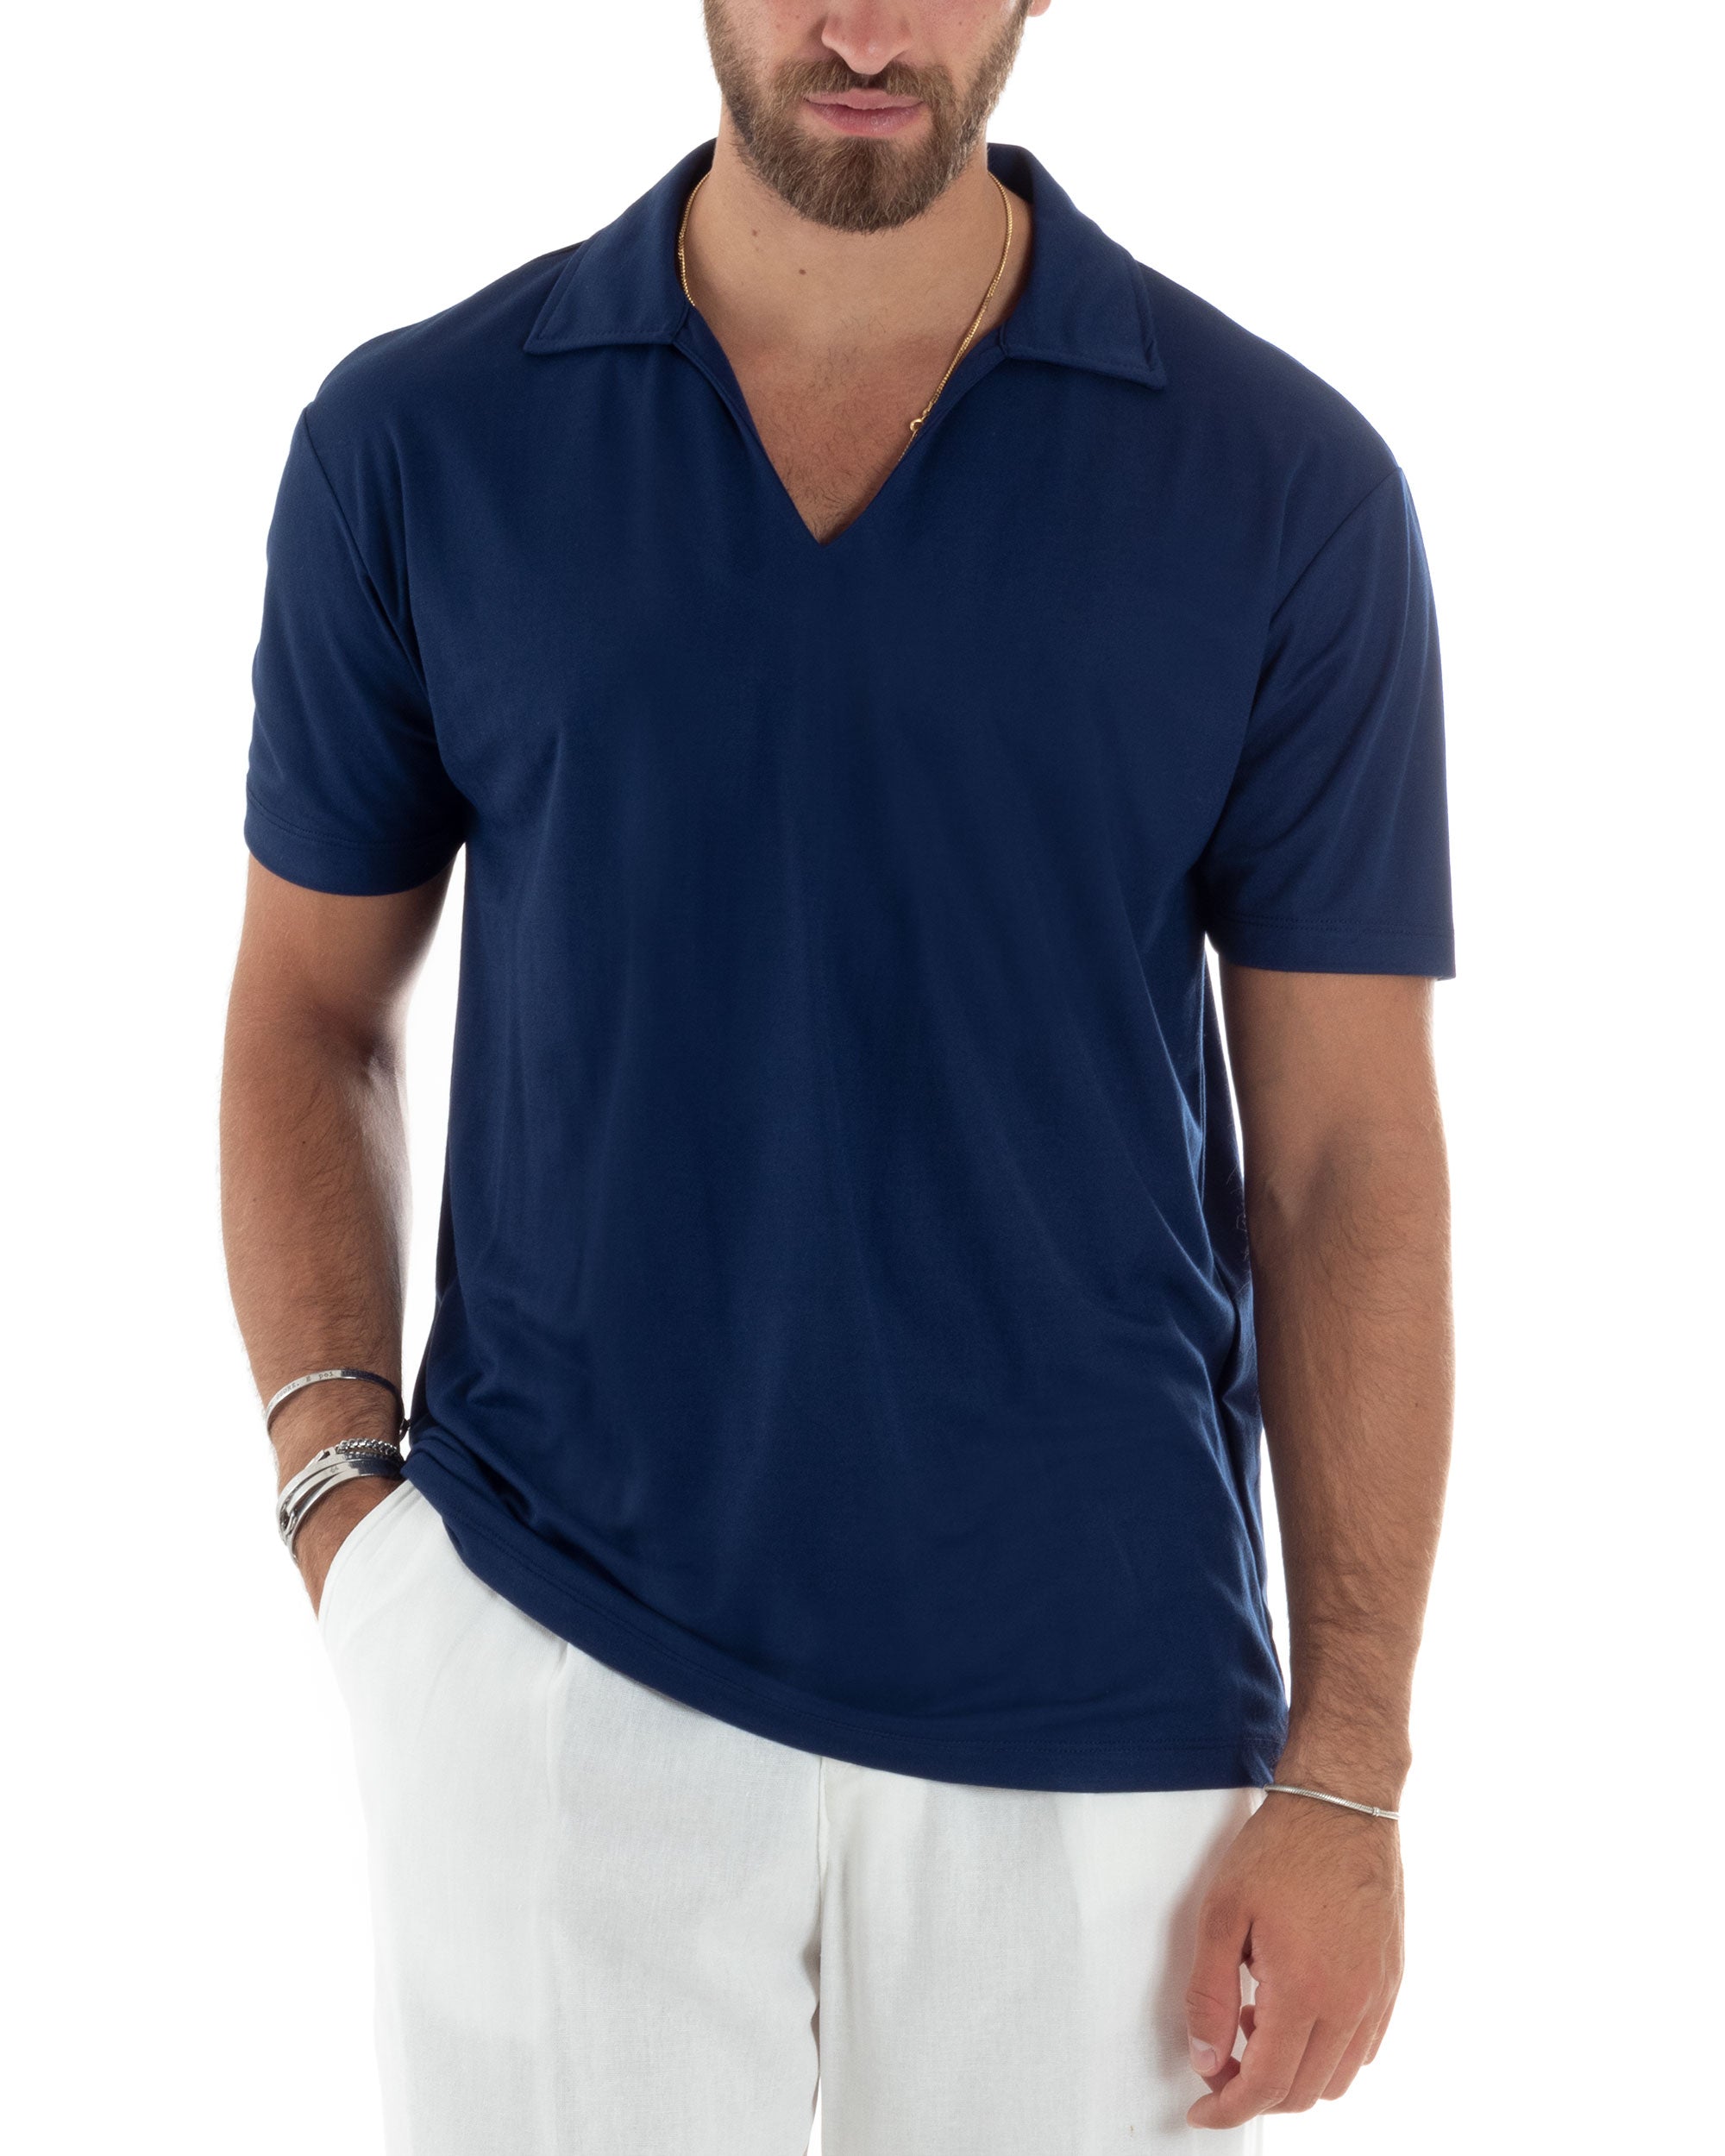 Polo Mezze Maniche Uomo Basic Scollo A V T-Shirt Con Colletto Tinta Unita Blu GIOSAL-TS3069A